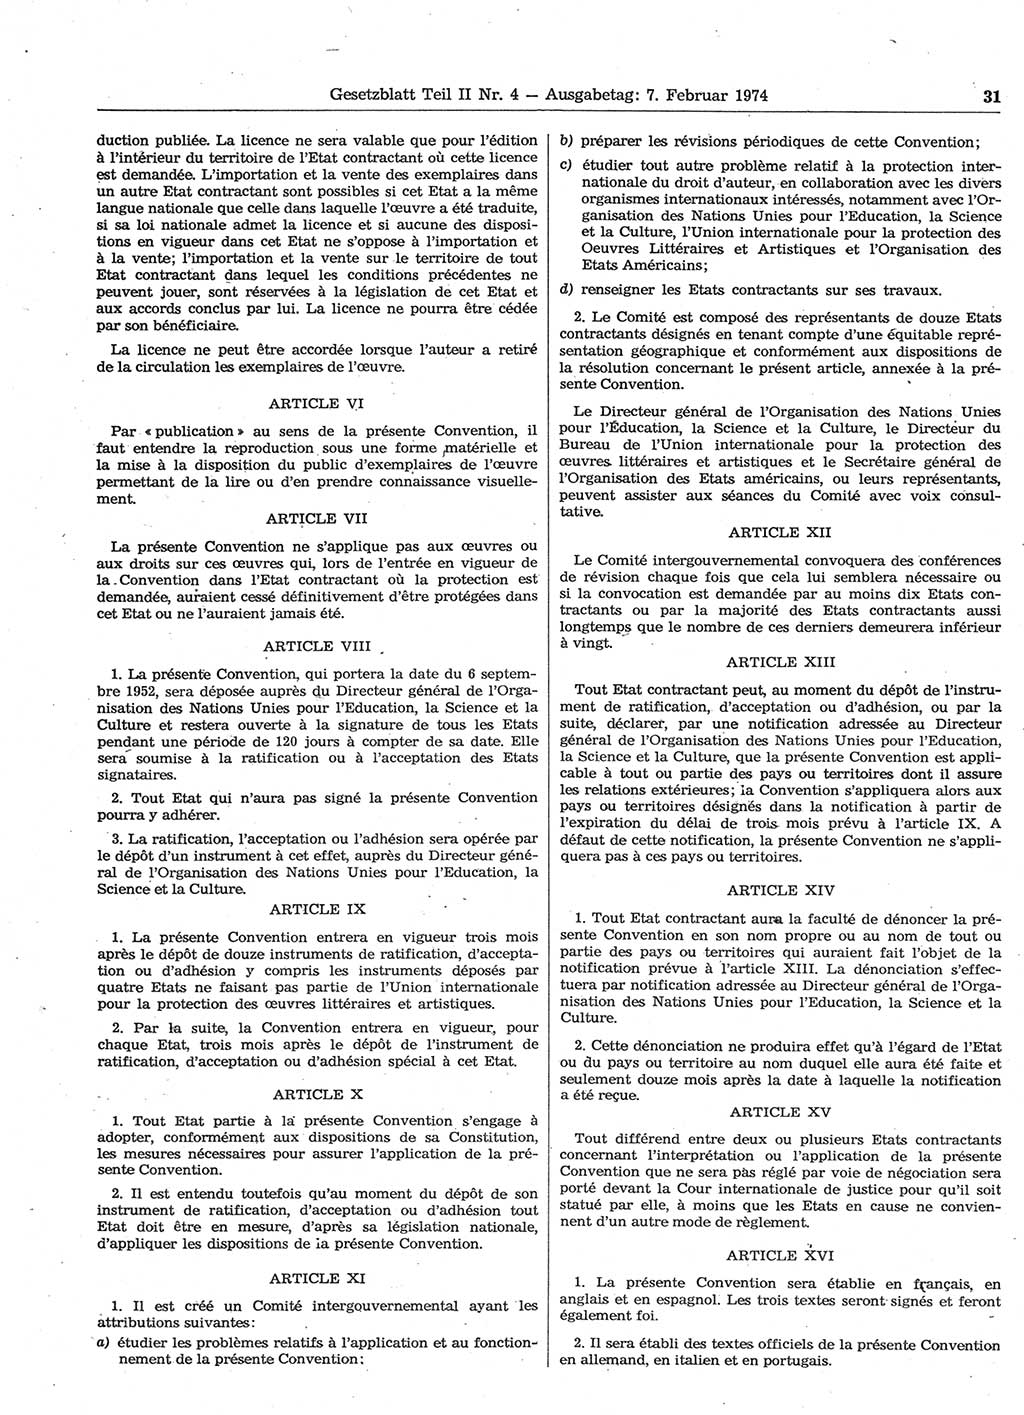 Gesetzblatt (GBl.) der Deutschen Demokratischen Republik (DDR) Teil ⅠⅠ 1974, Seite 31 (GBl. DDR ⅠⅠ 1974, S. 31)